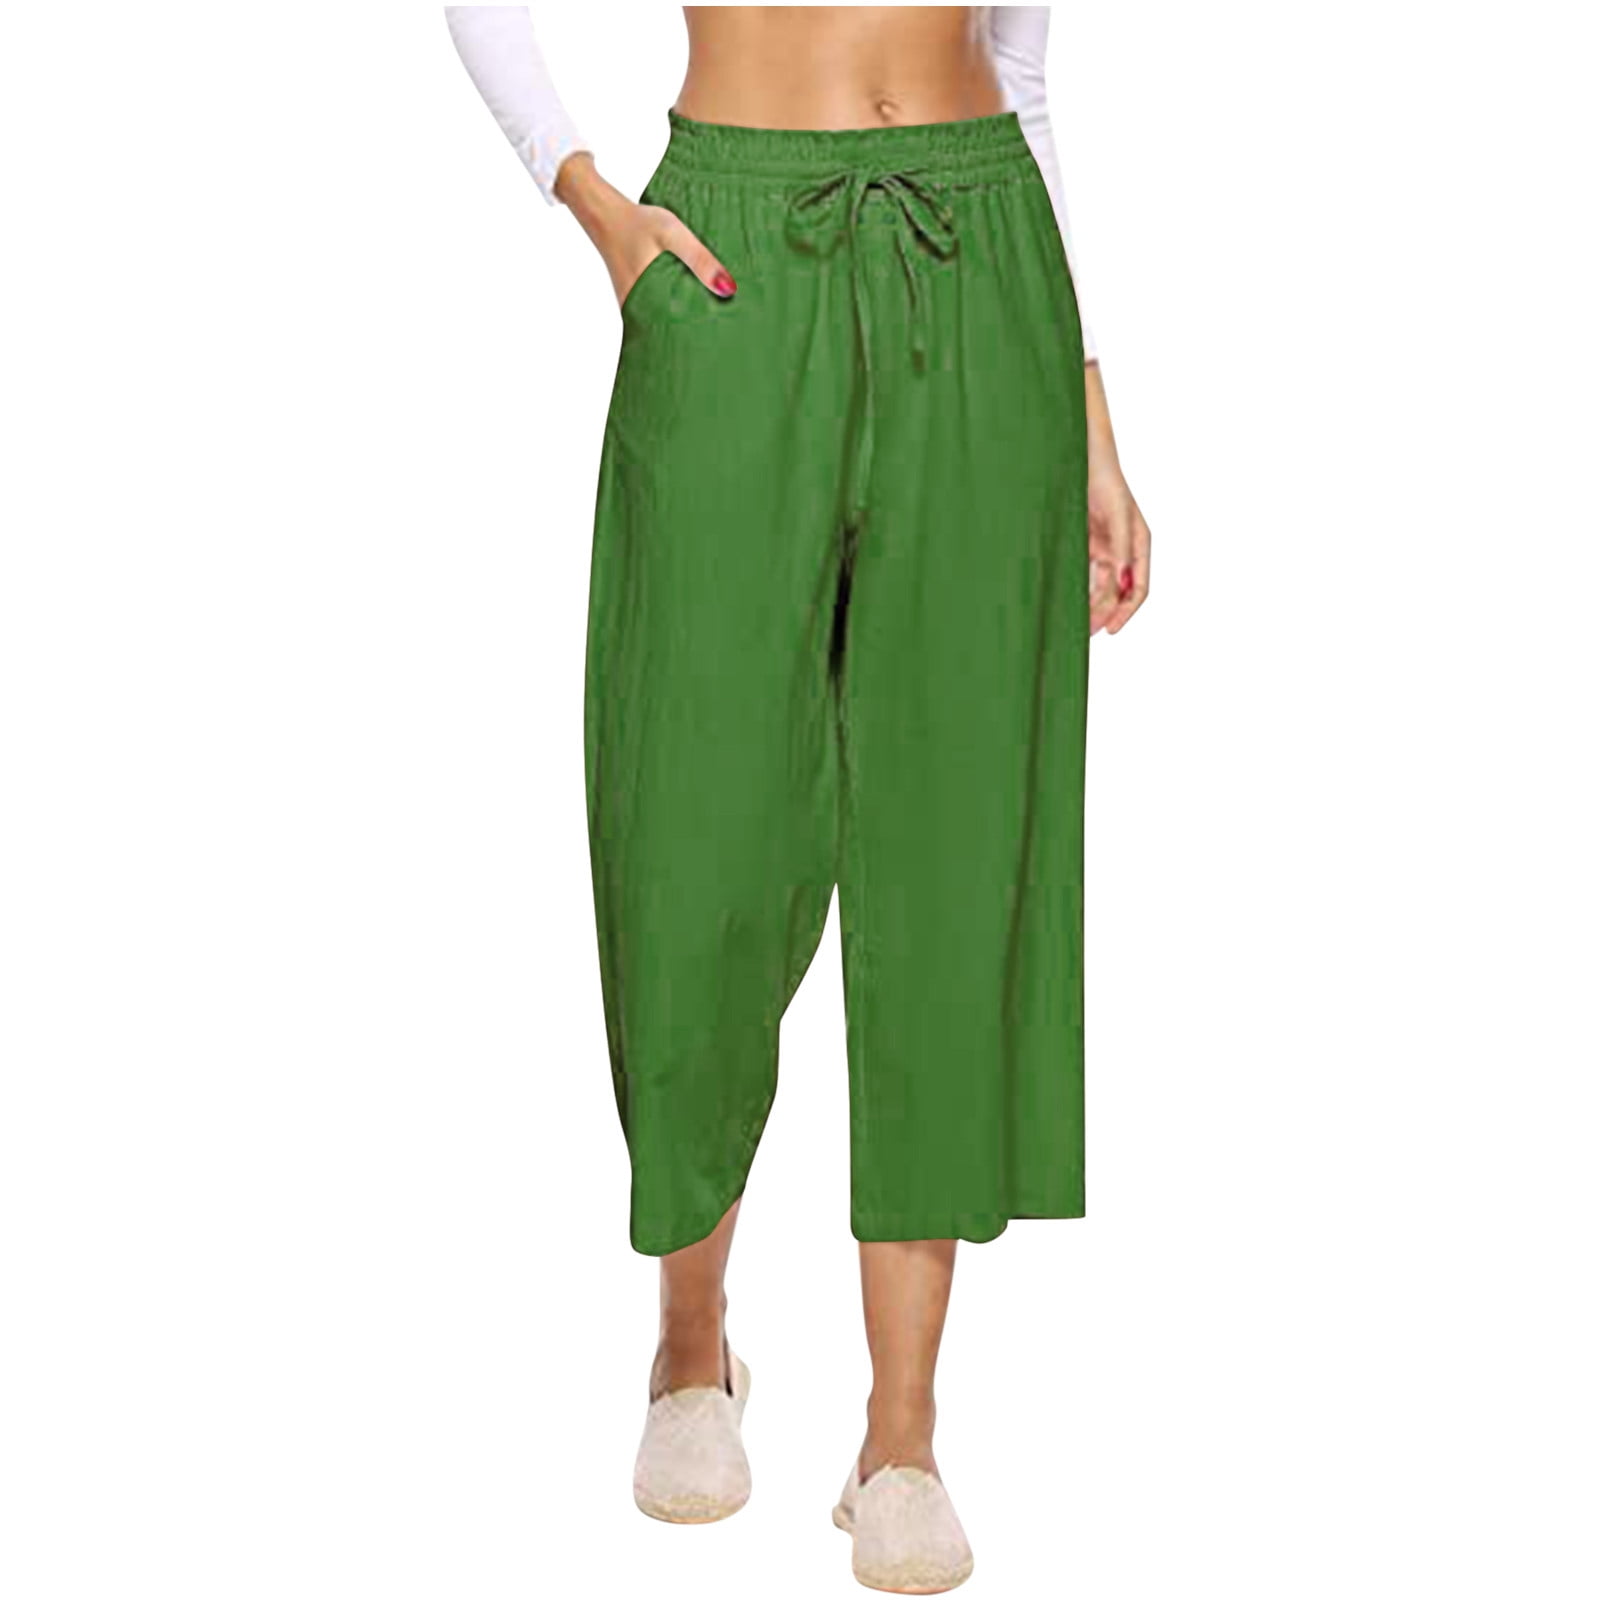 Munlar Women's Pants Green Loose Wide Leg Pants Workout Drawstring ...